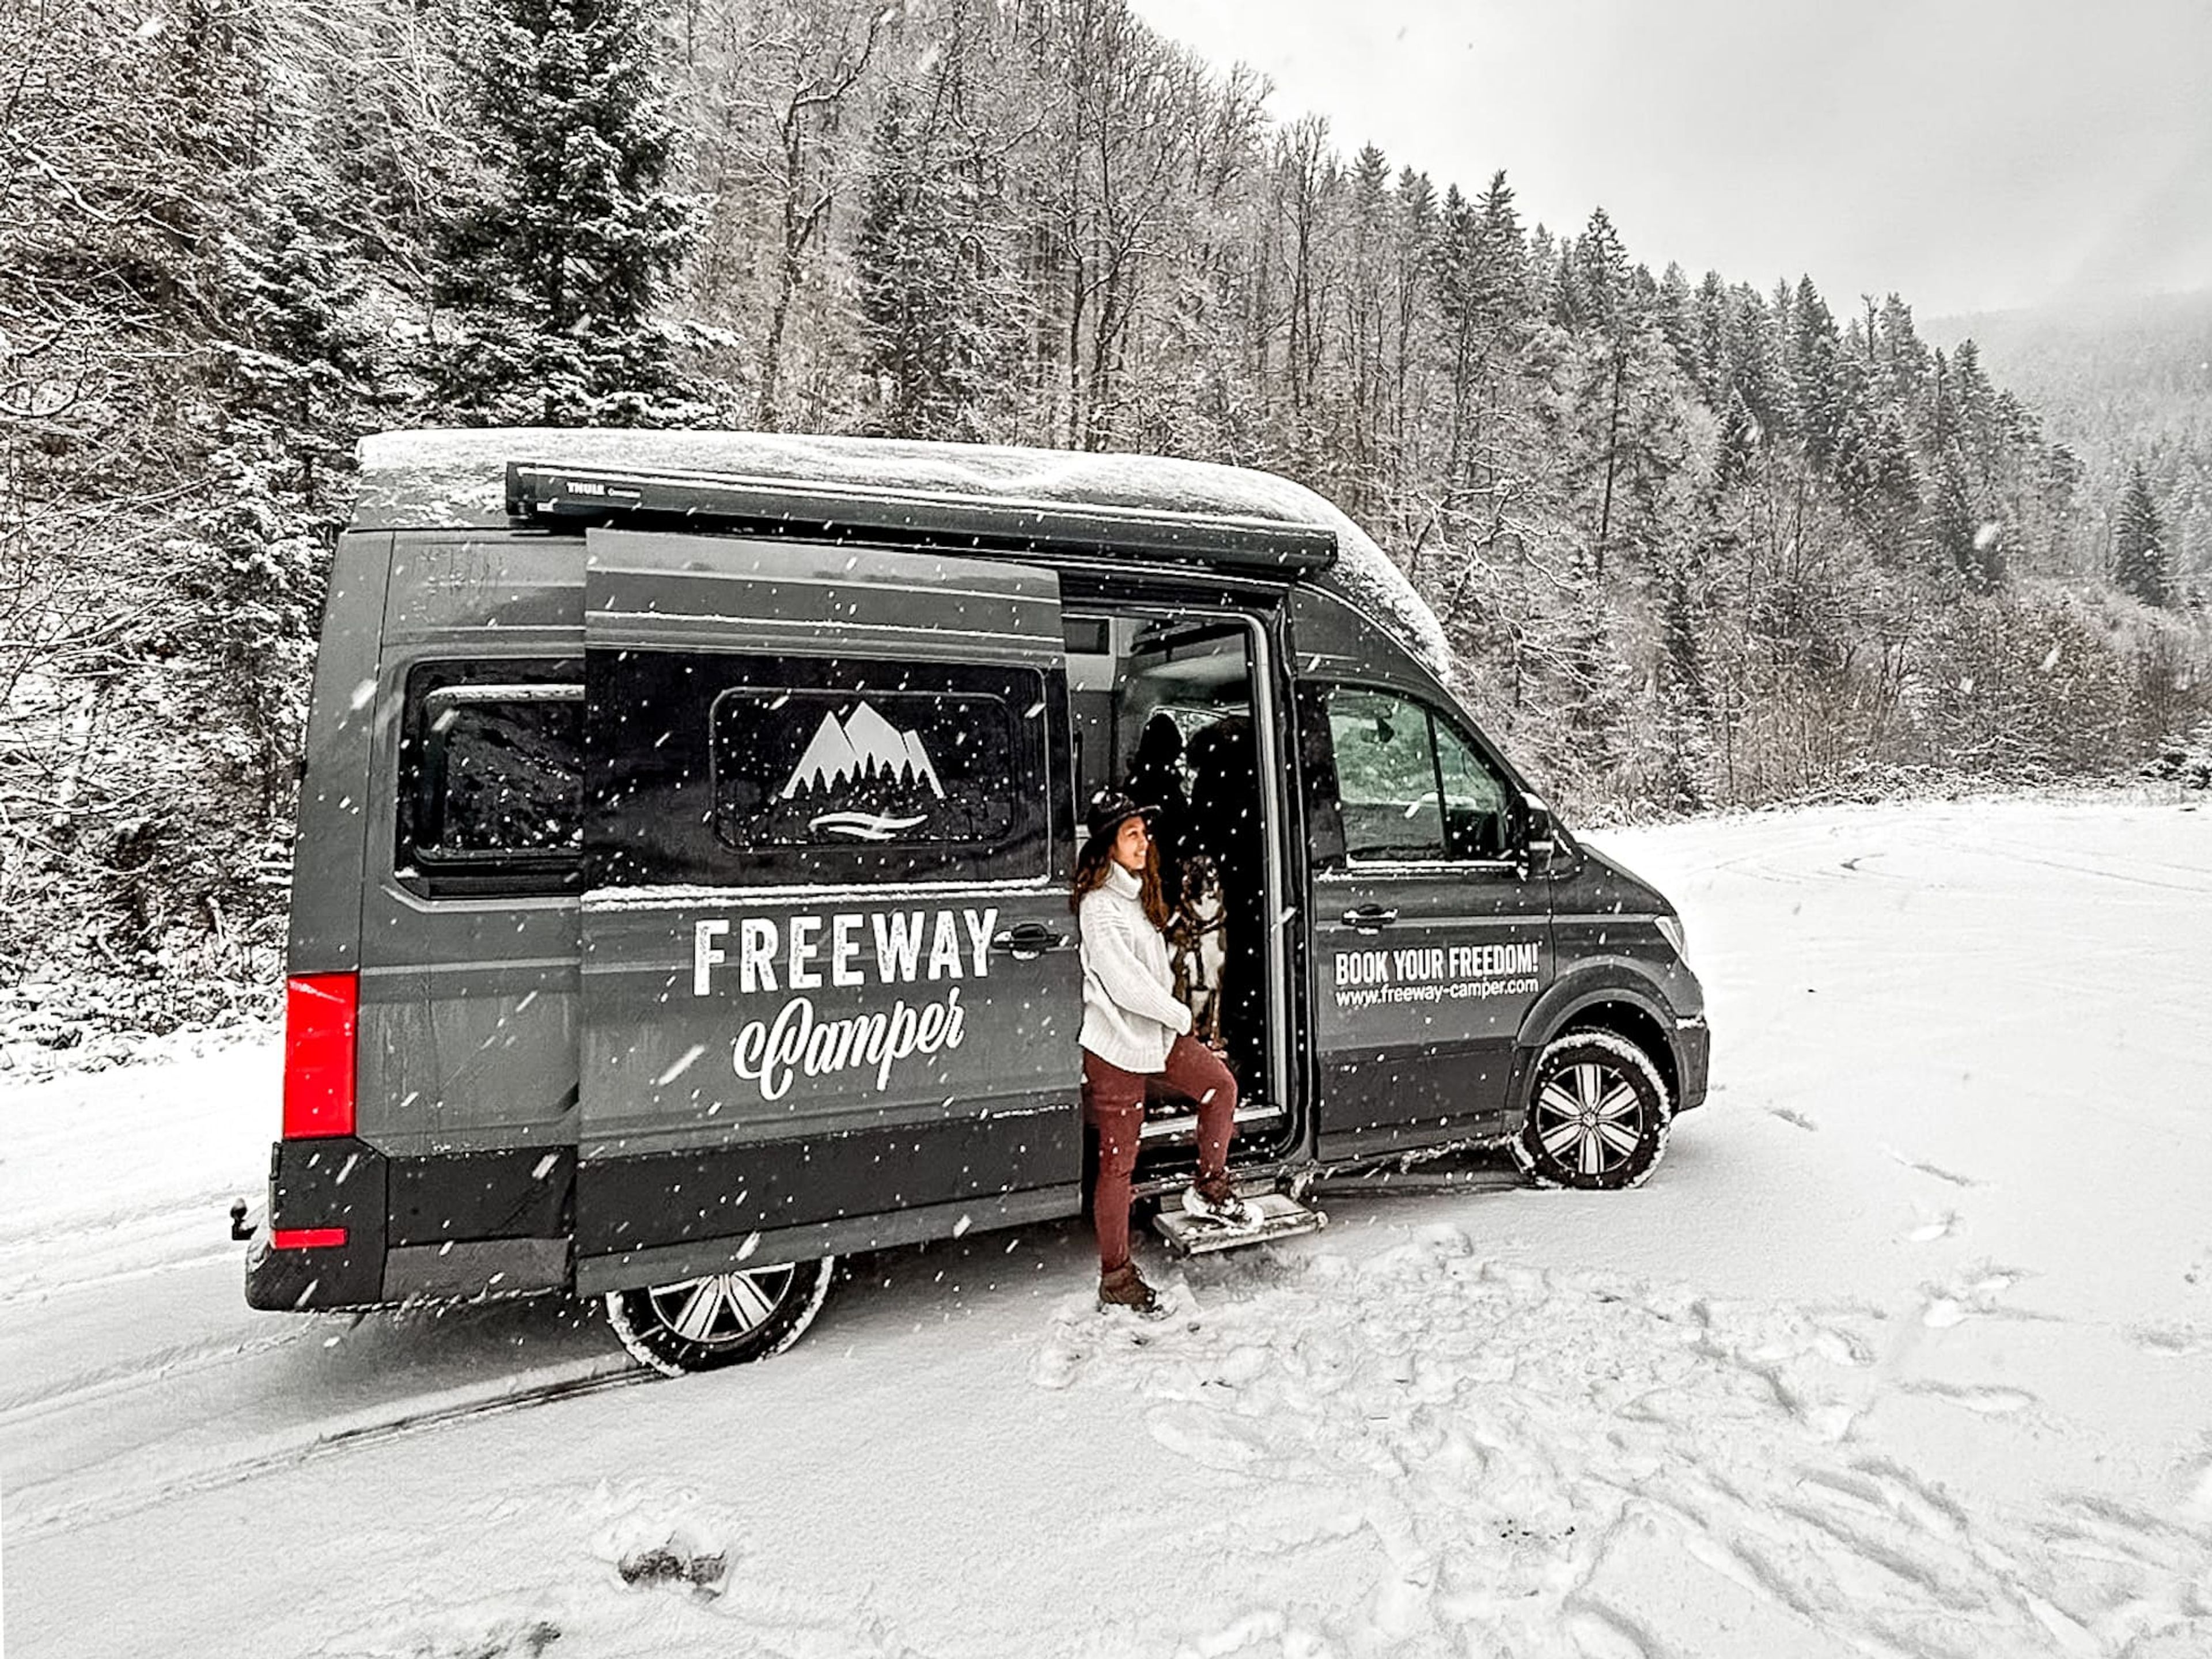 Viaggio in camper in Austria in inverno: una donna esce dal van sulla neve. Sullo sfondo gli abeti ricoperti da neve.